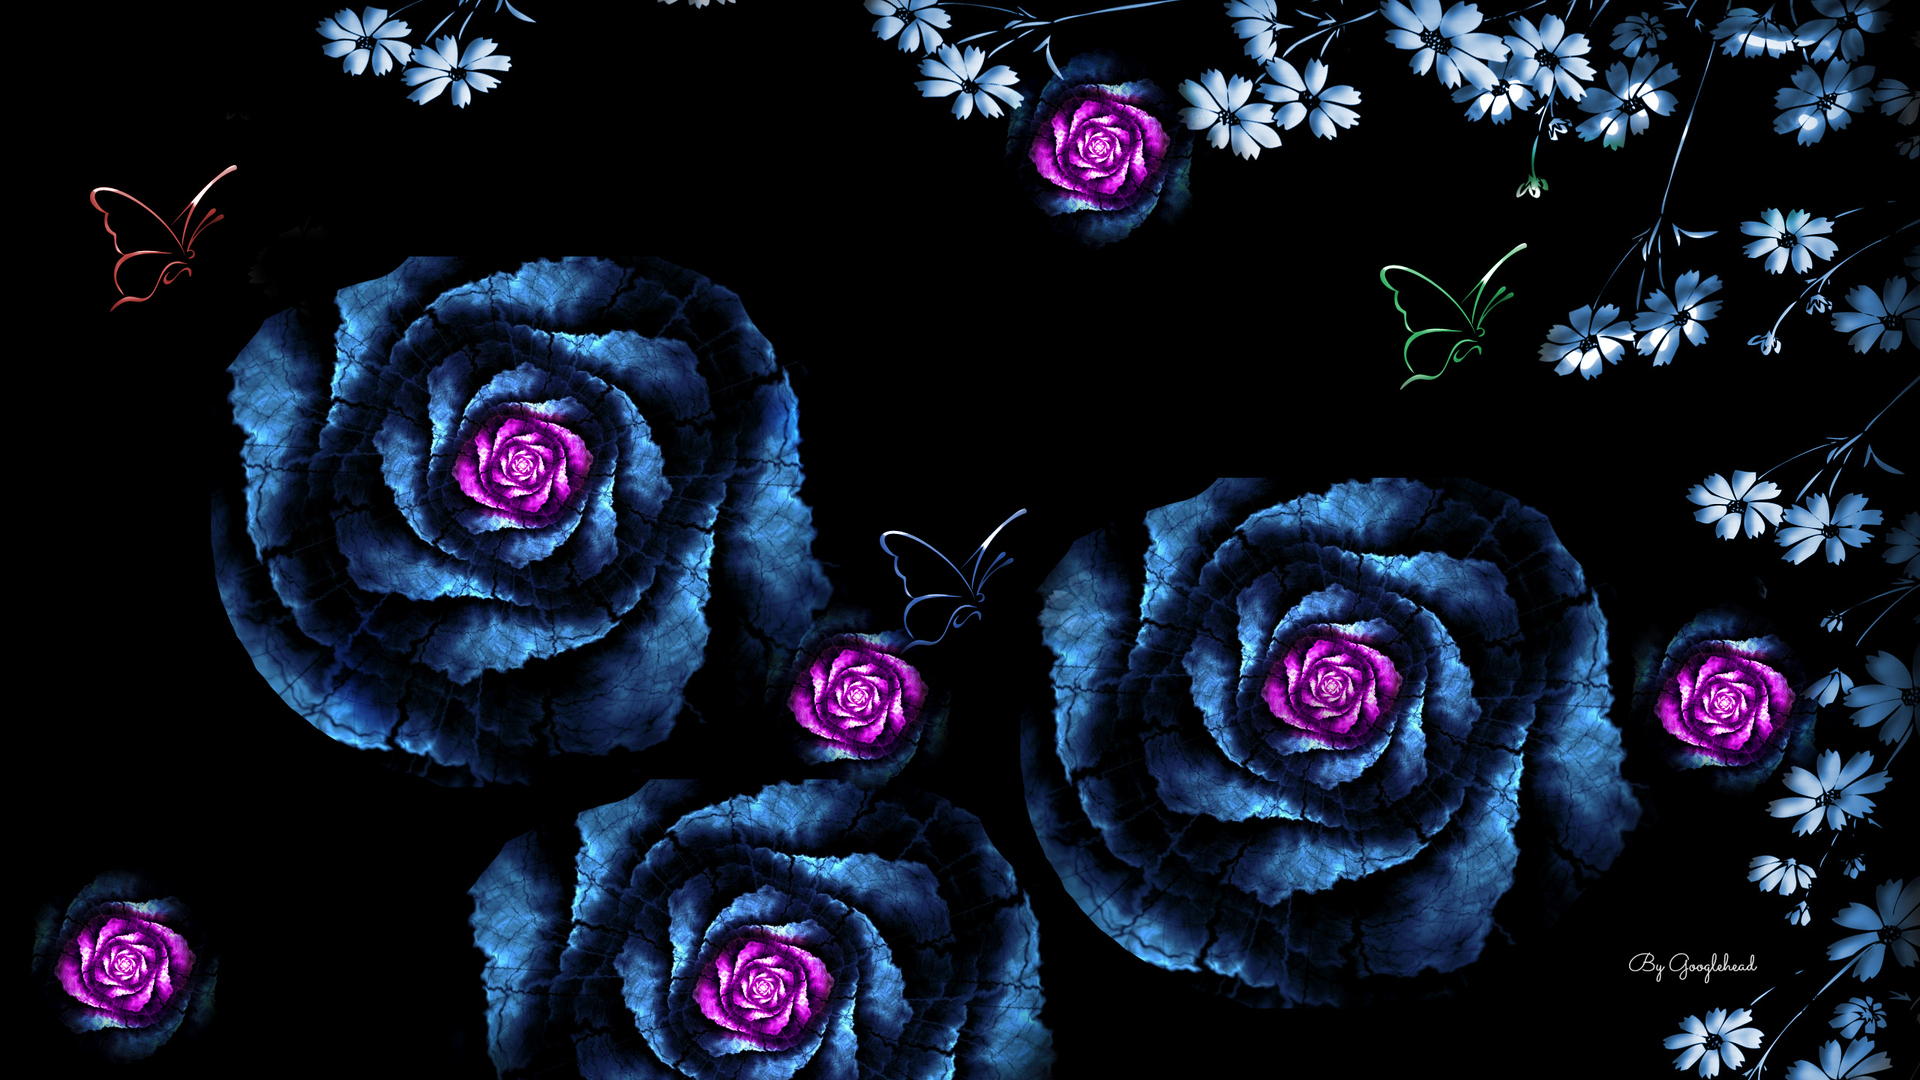 Скачать обои бесплатно Роза, Синий, Бабочка, Фиолетовый Цветок, Художественные картинка на рабочий стол ПК